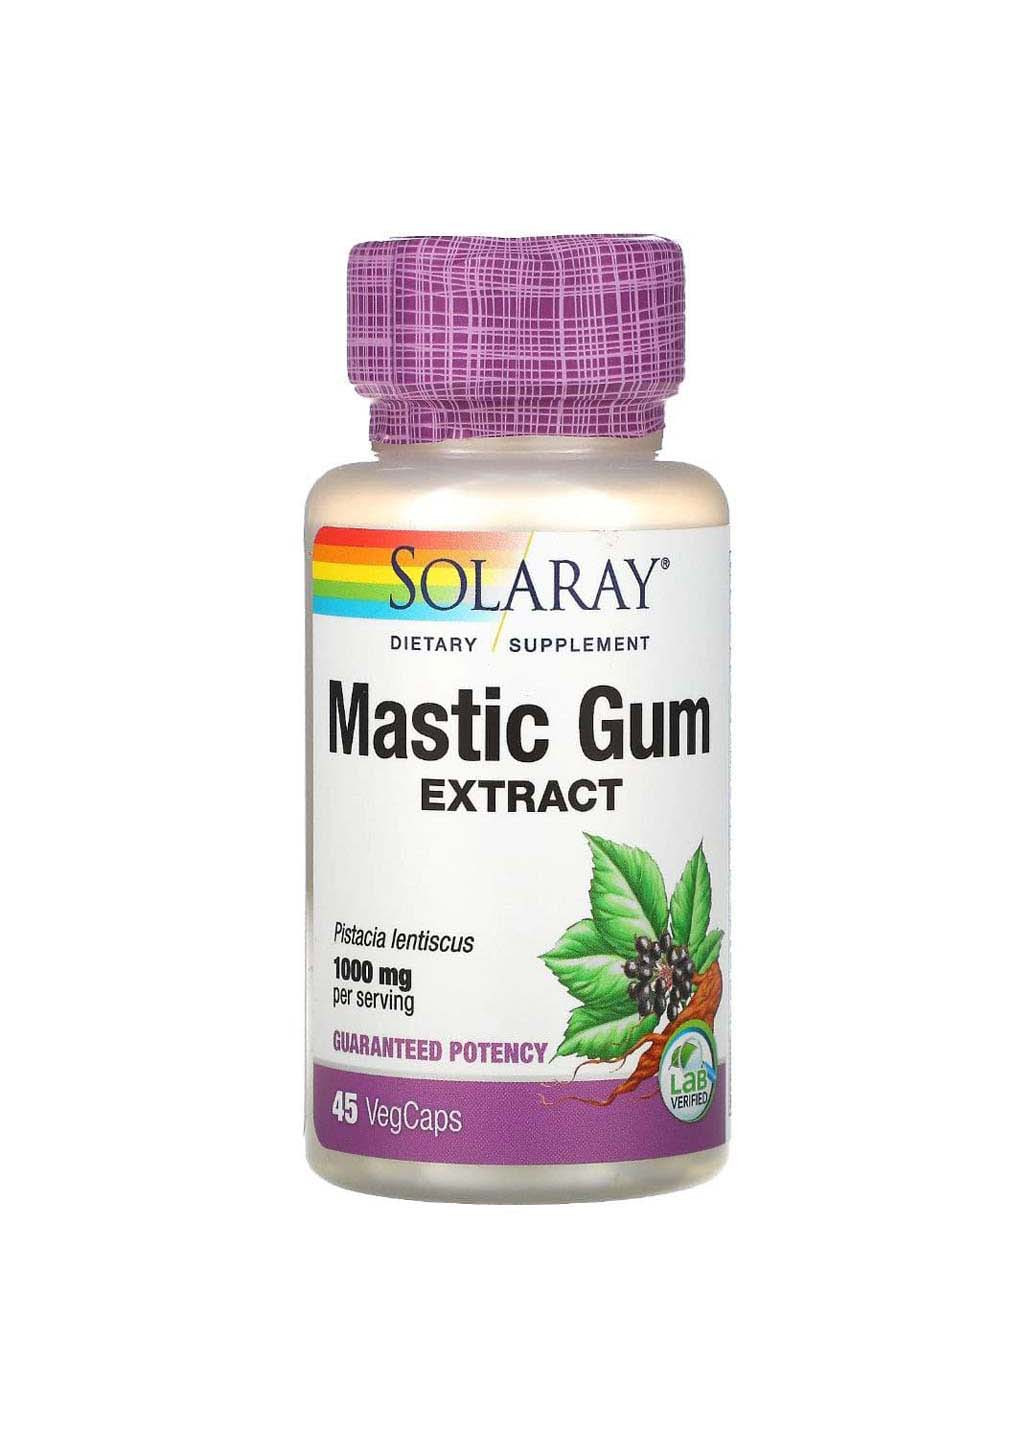 Смола мастикового дерева экстракт Mastic Gum 1000 мг 45 вегетарианских капсул Solaray (256931870)